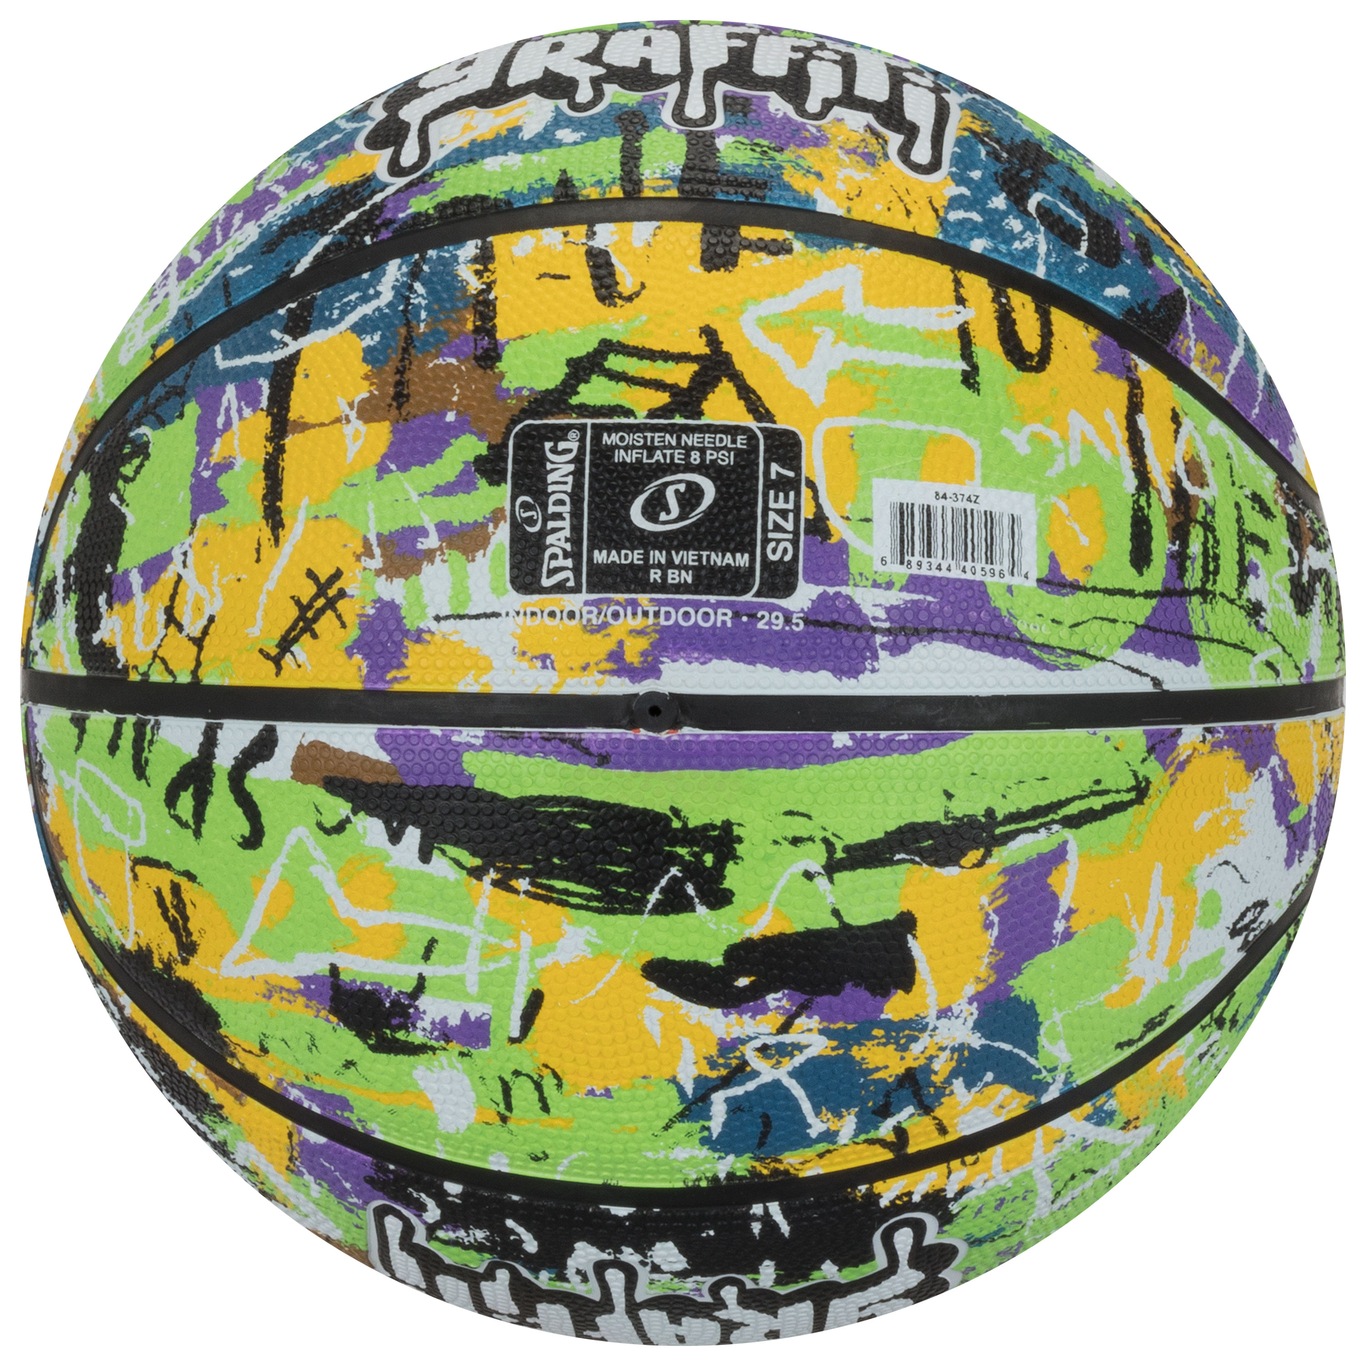 Bola de Basquete Spalding Graffiti Amarelo+Verde - Claus Sports - Loja de  Material Esportivo - Tênis, Chuteiras e Acessórios Esportivos